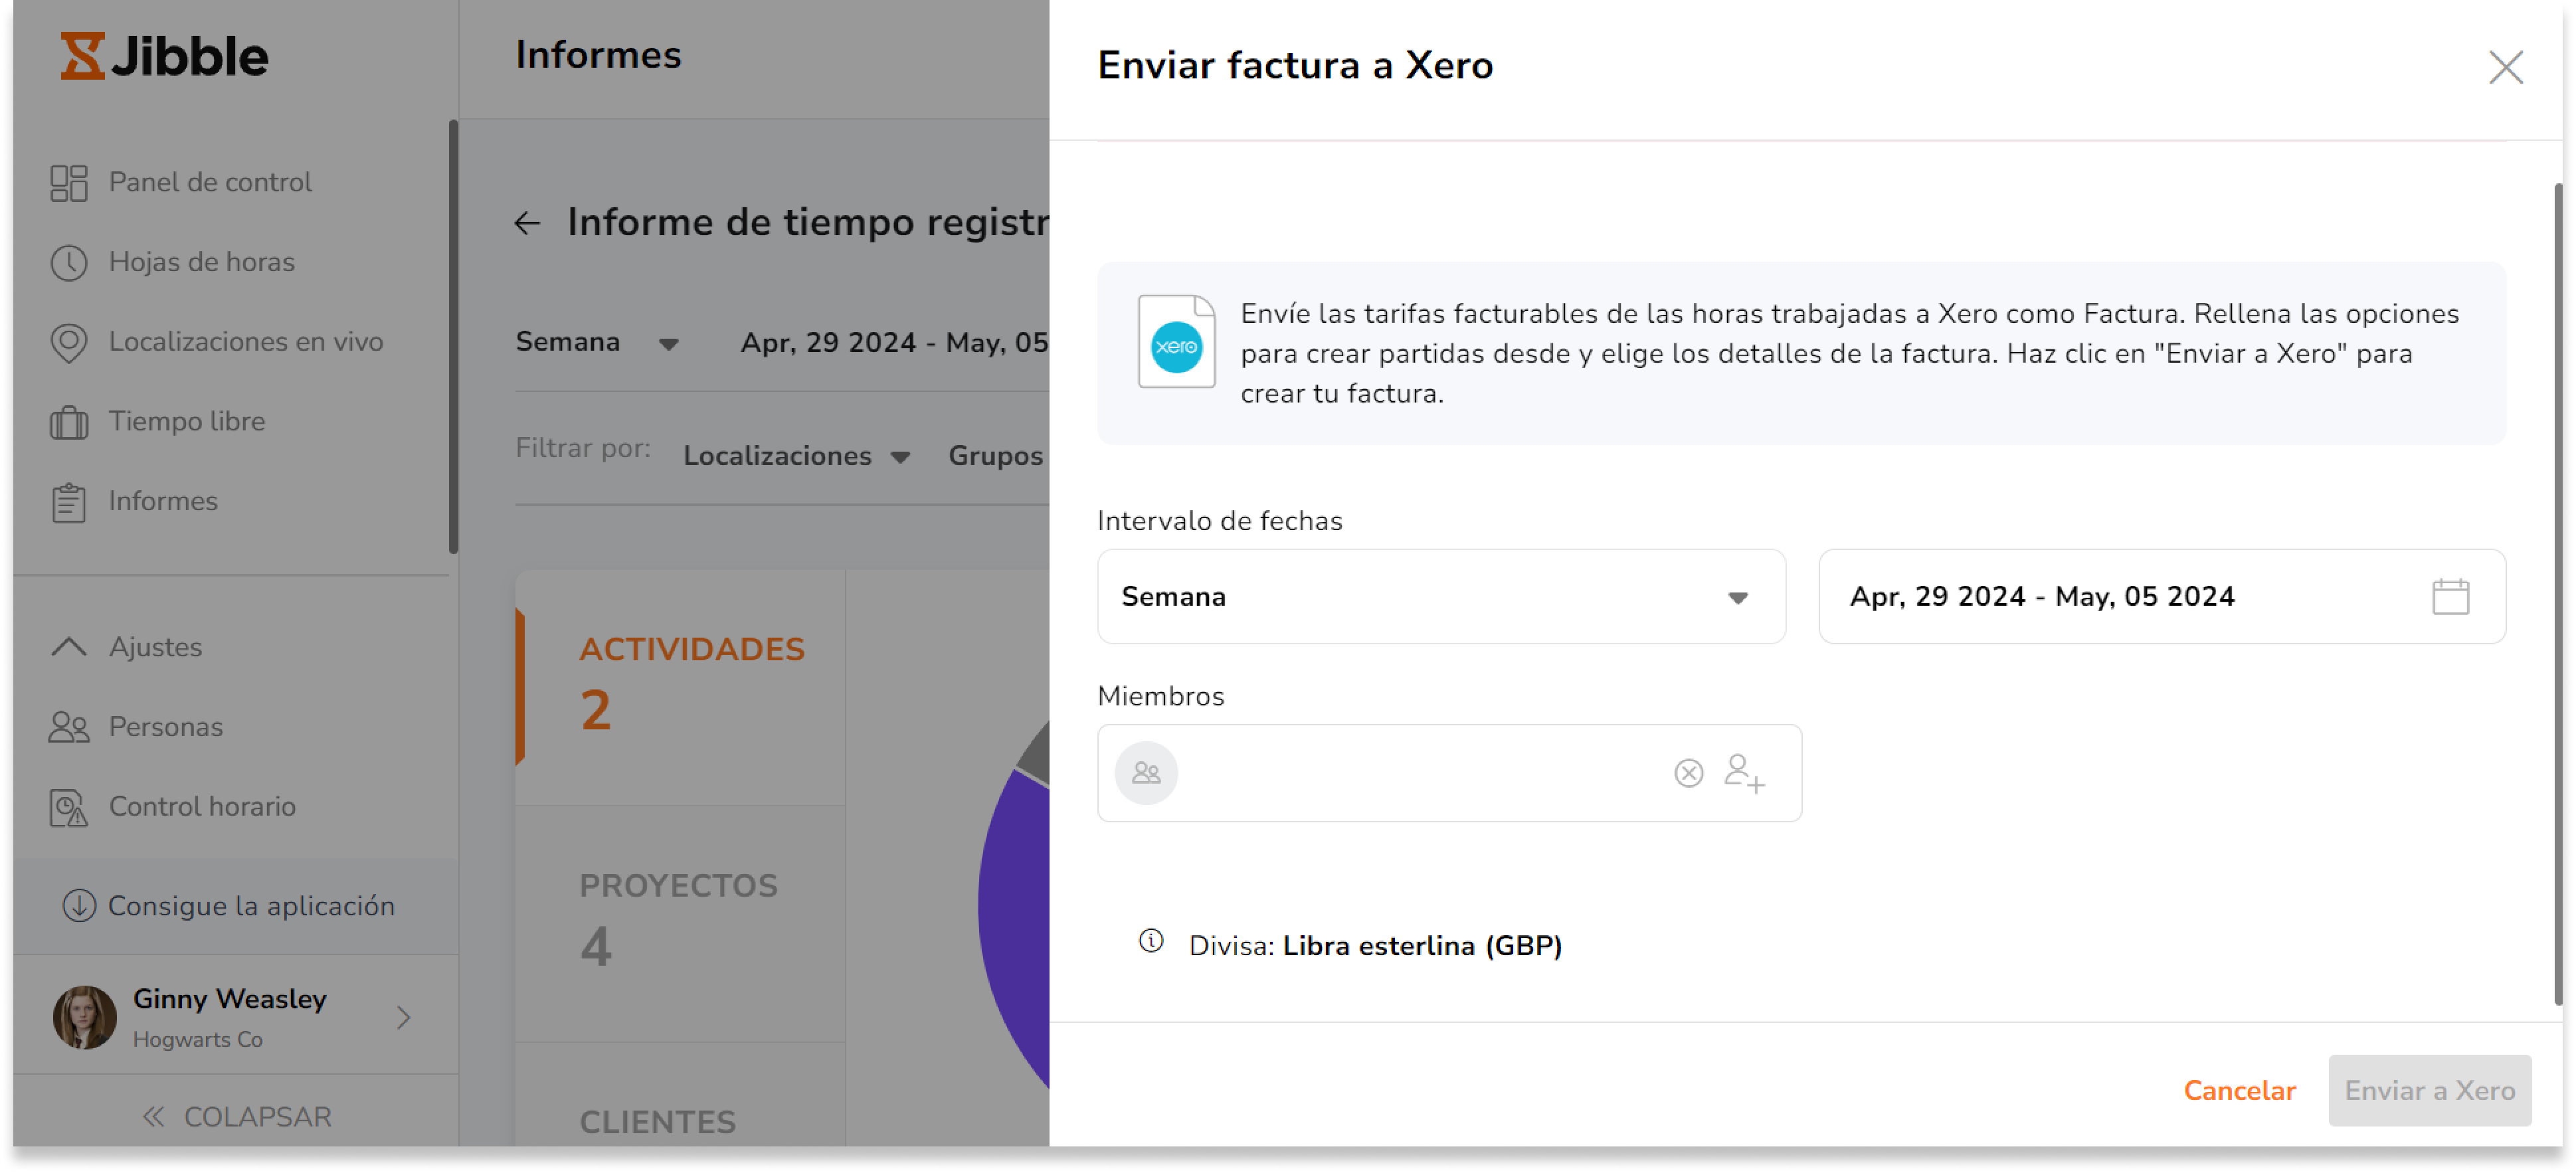 Haz clic en el botón "Enviar a Xero" para abrir la barra lateral de exportación de informes.